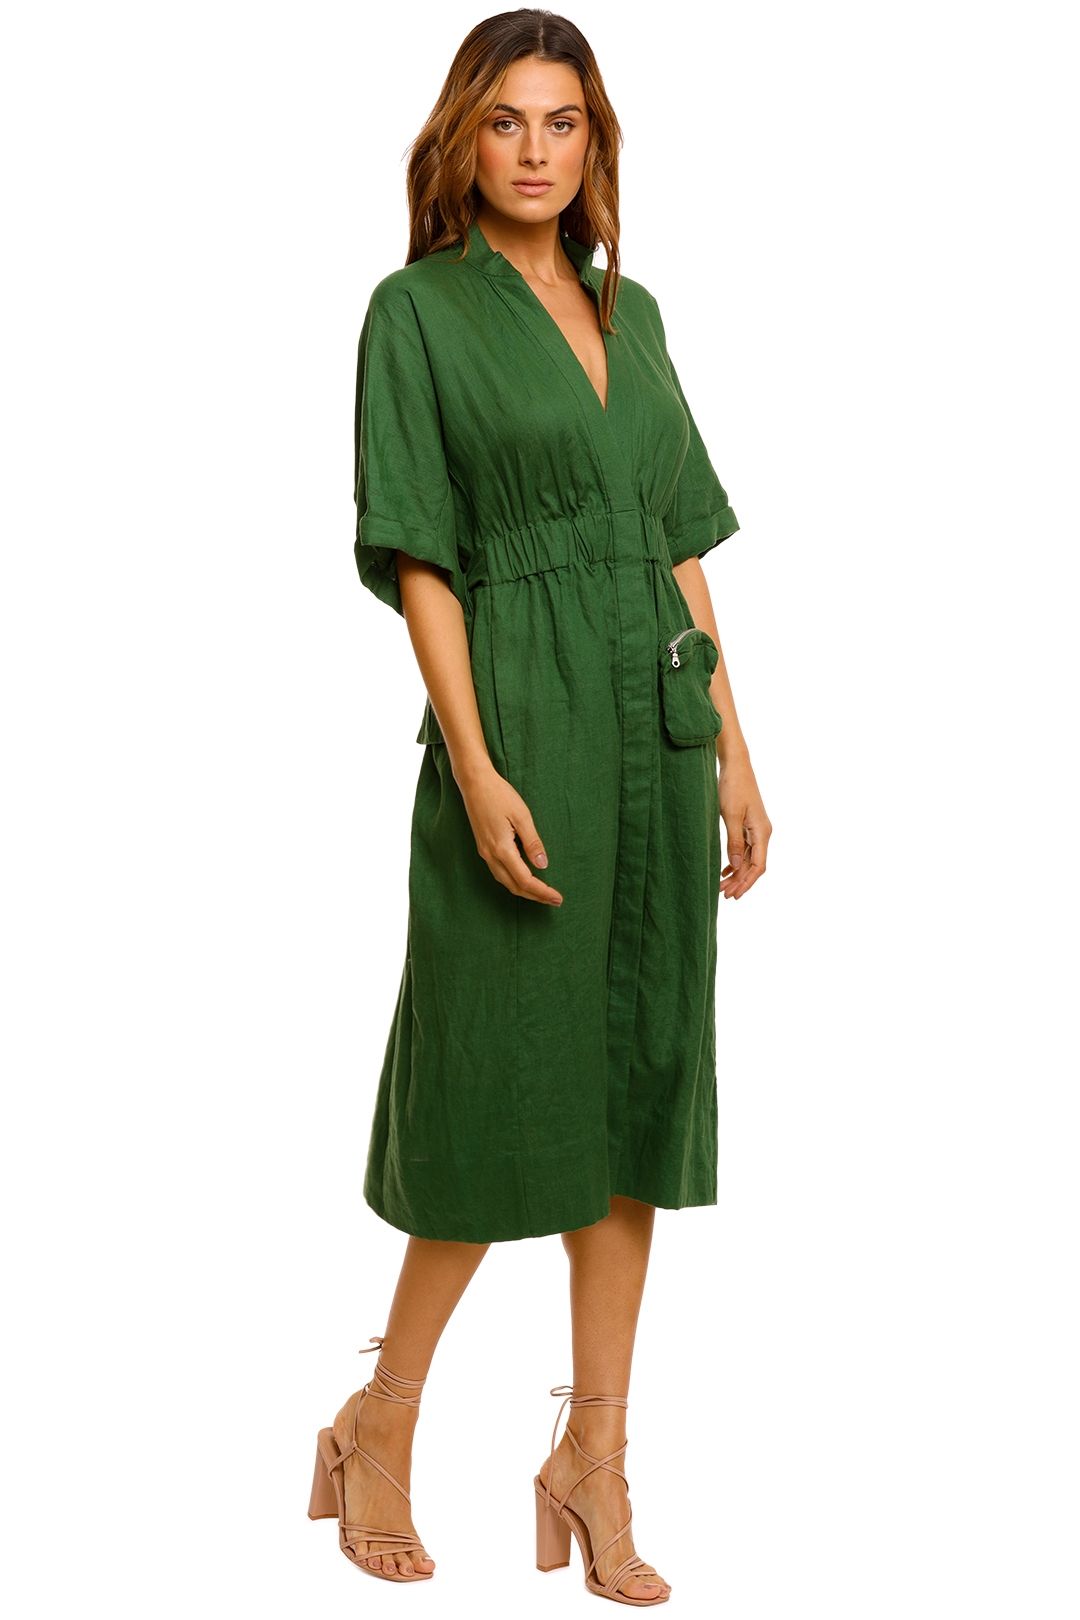 KITX Declaration Green Linen Shirt Dress